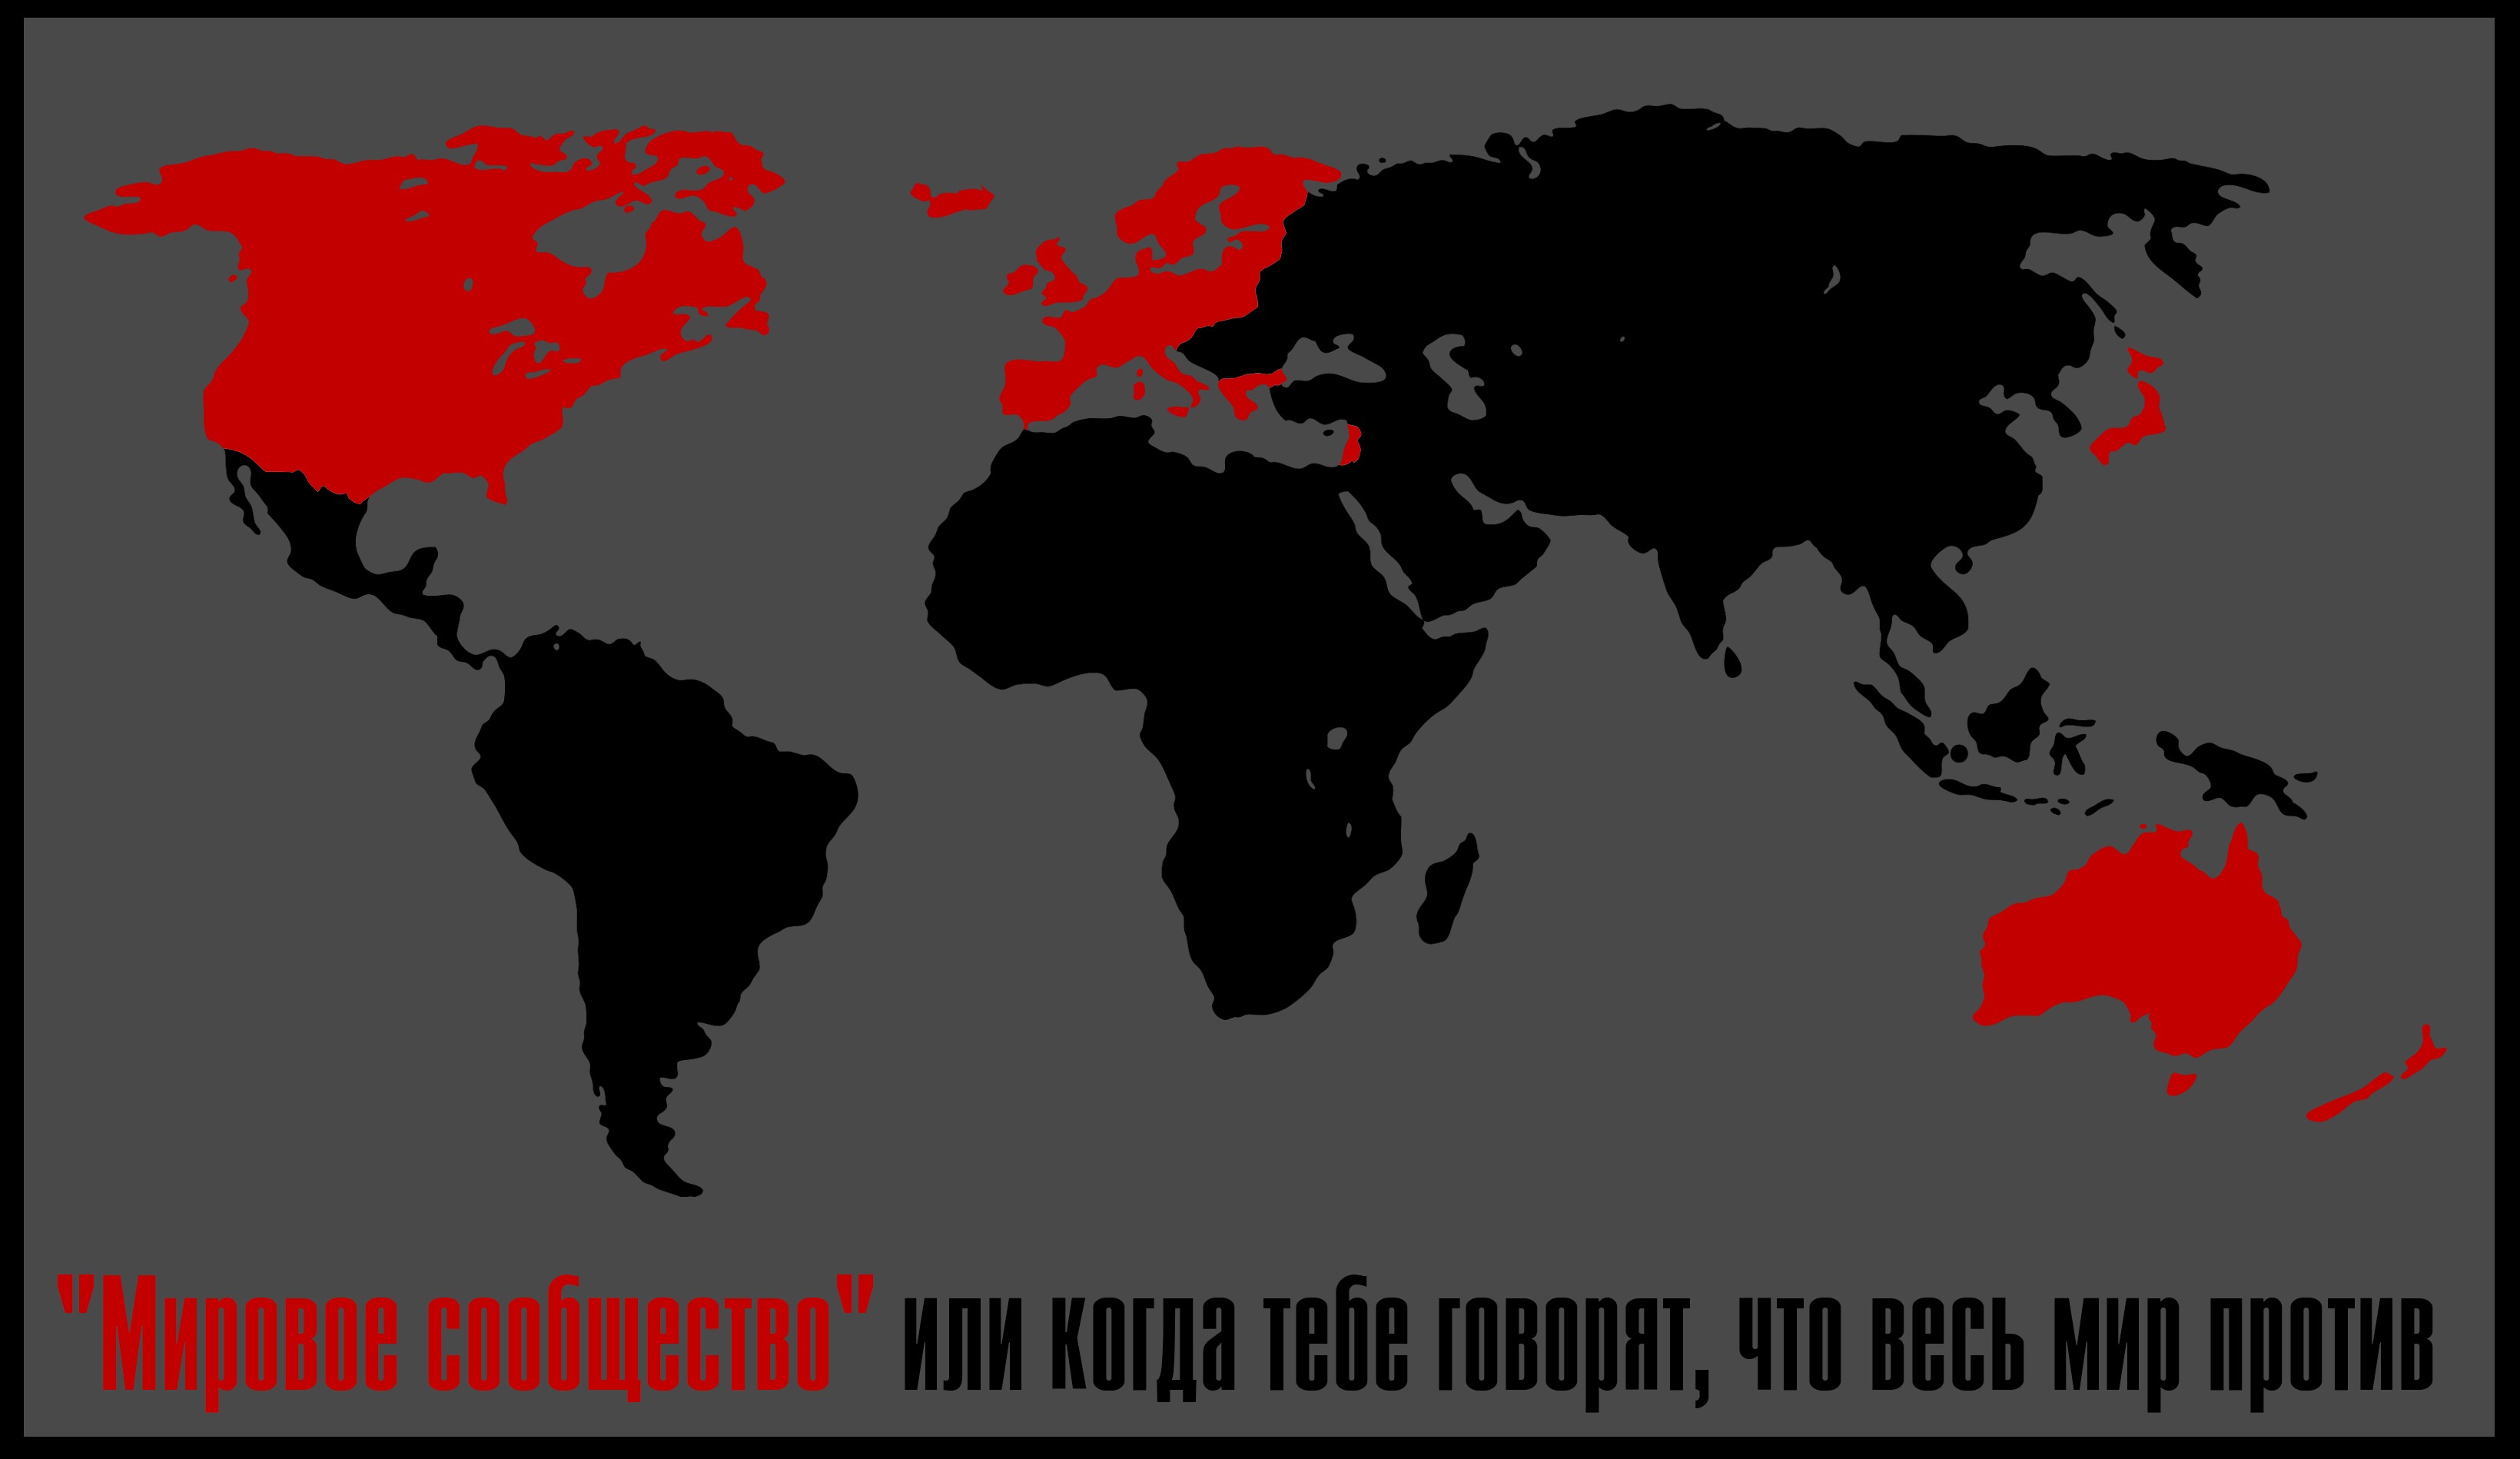 Карта изоляция. Весь мир против России. Весь мир против России карта. Весь мир санкции карта. Весь мир против РФ.